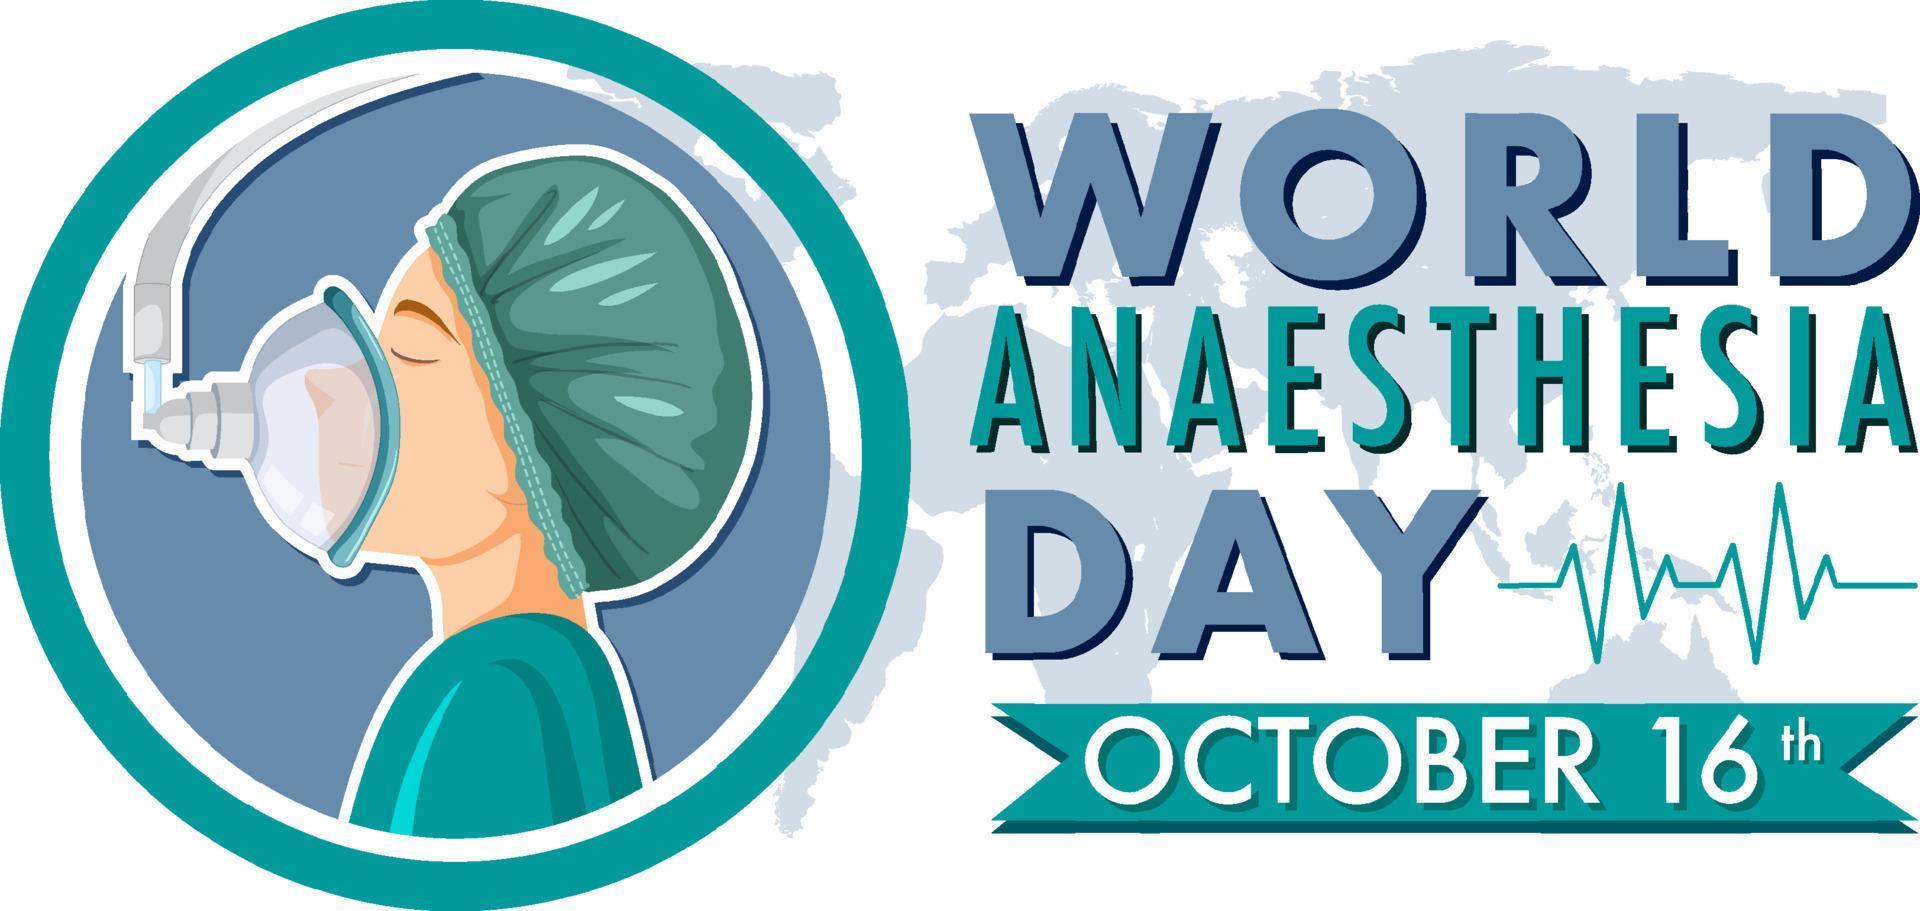 conception de bannière de la journée mondiale de l'anesthésie vecteur